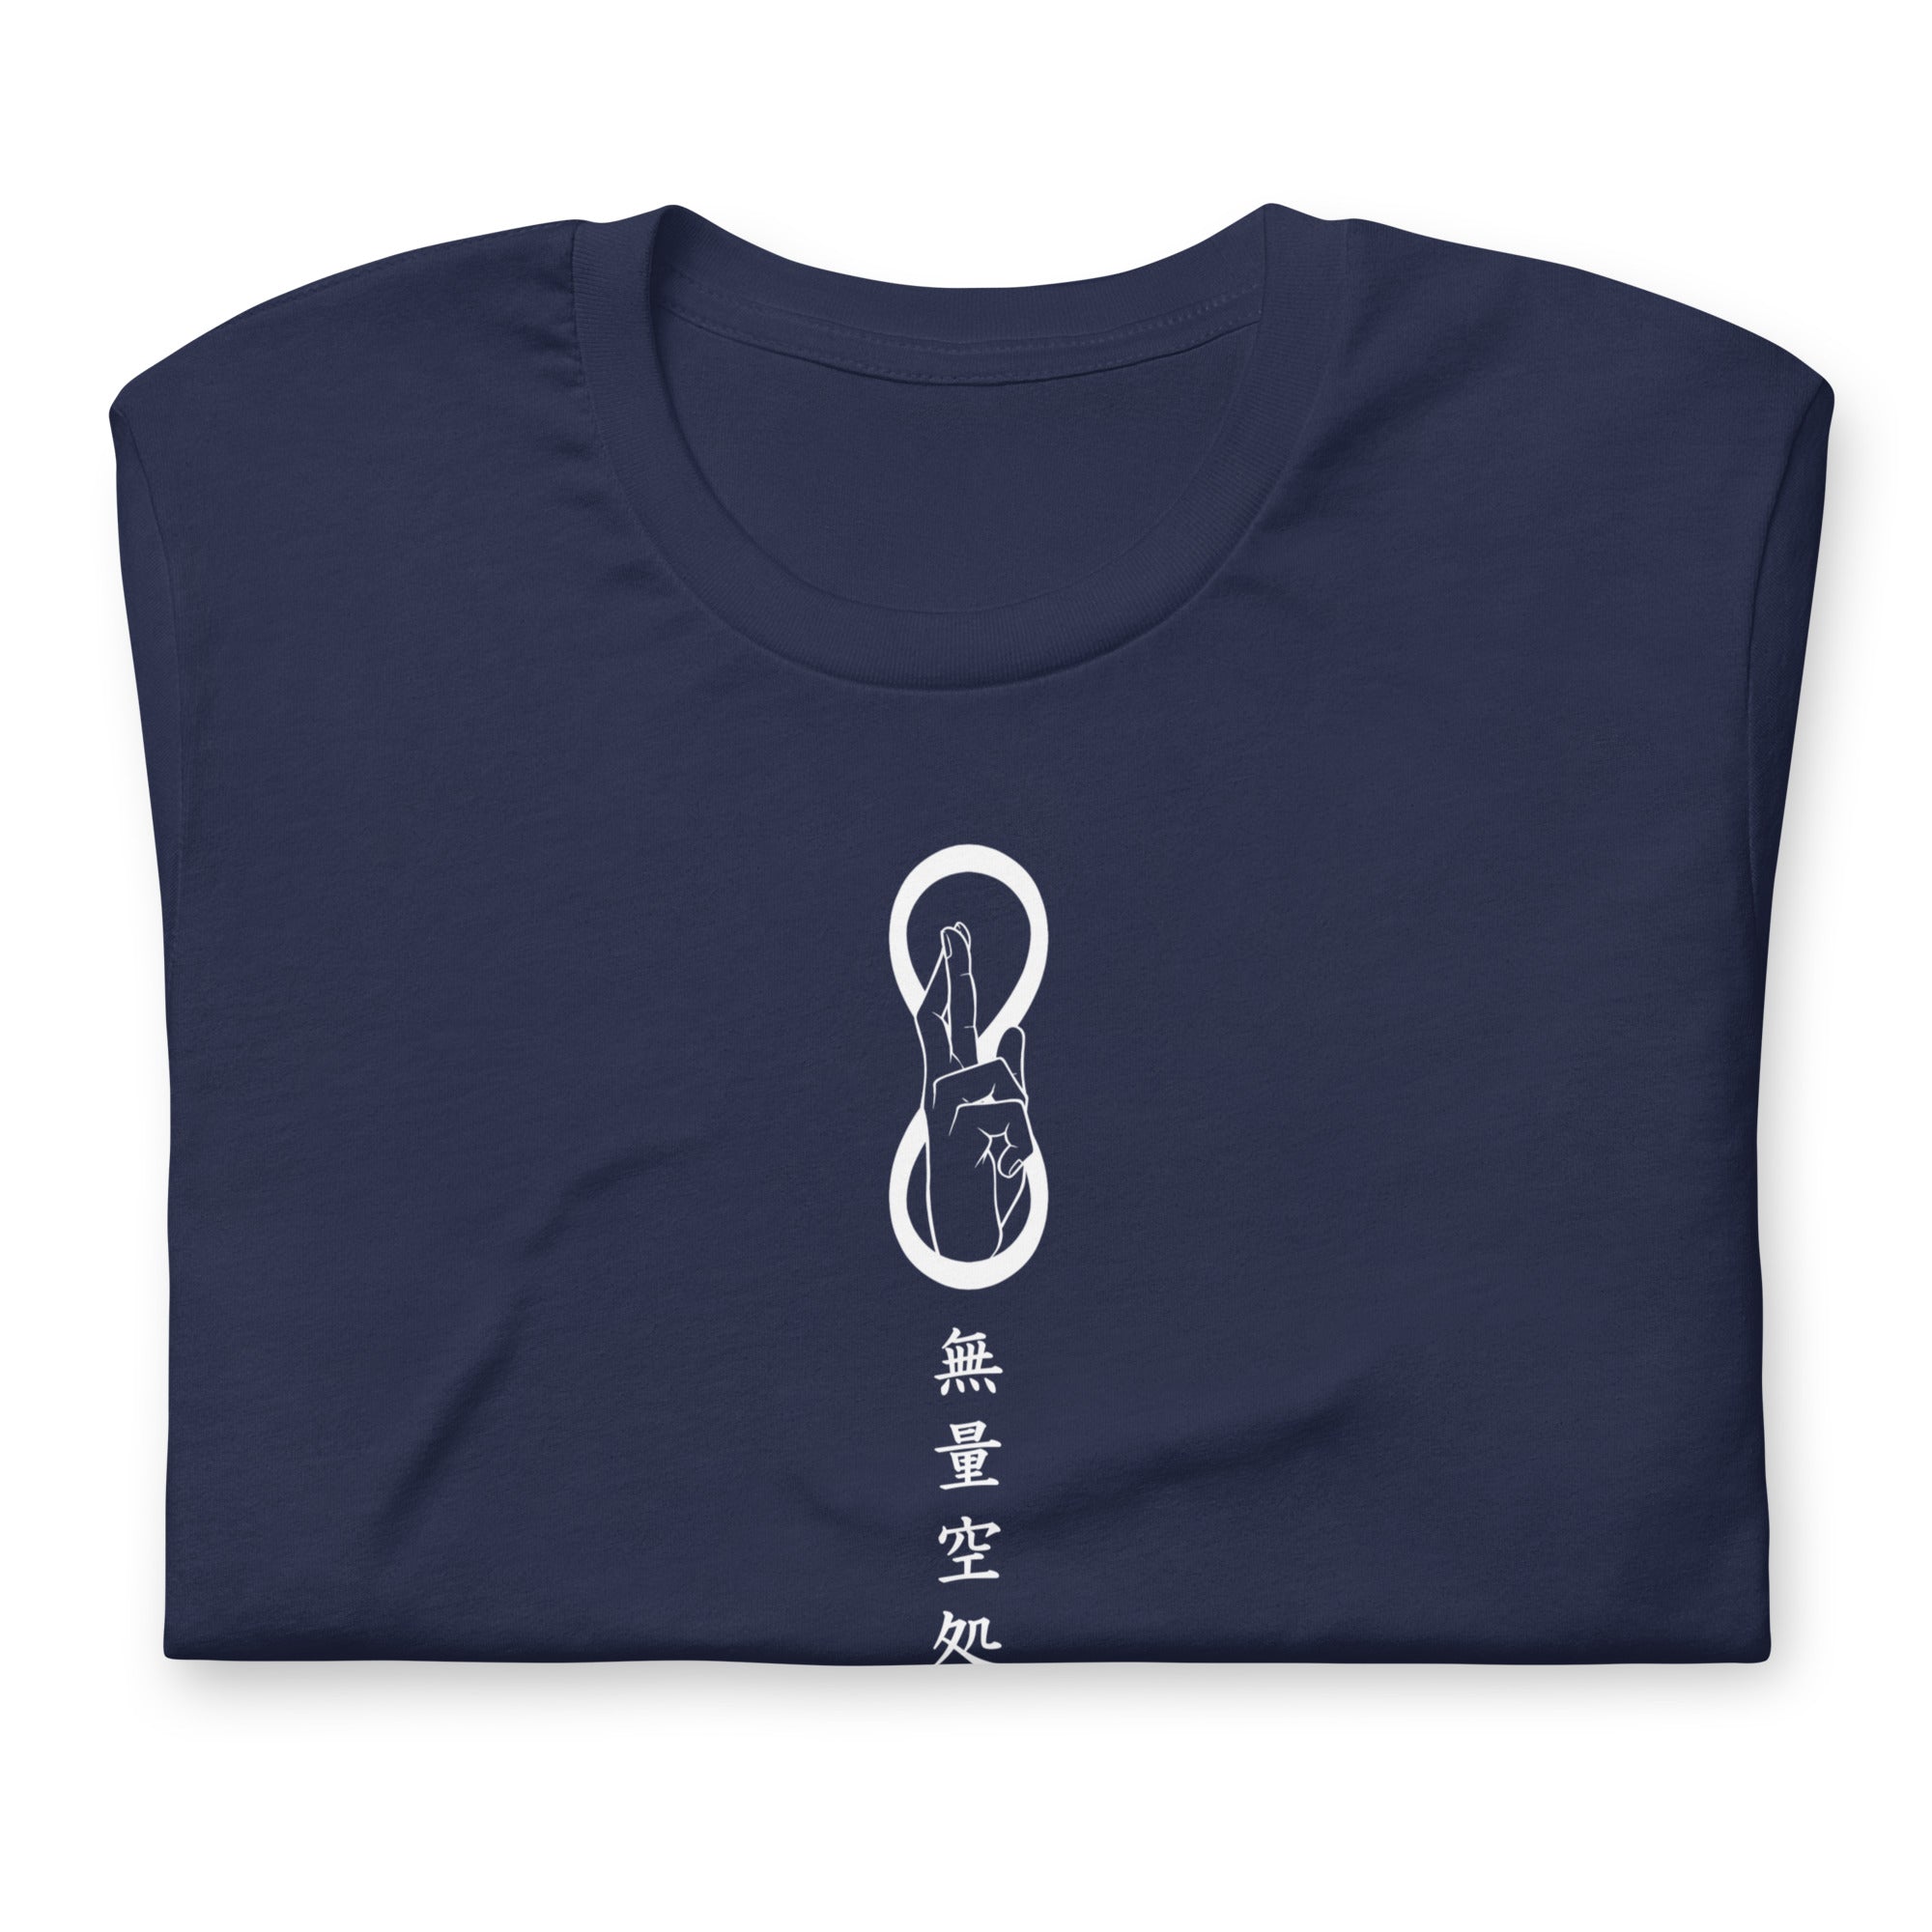 Gojo (Infinite Void) - T-Shirt